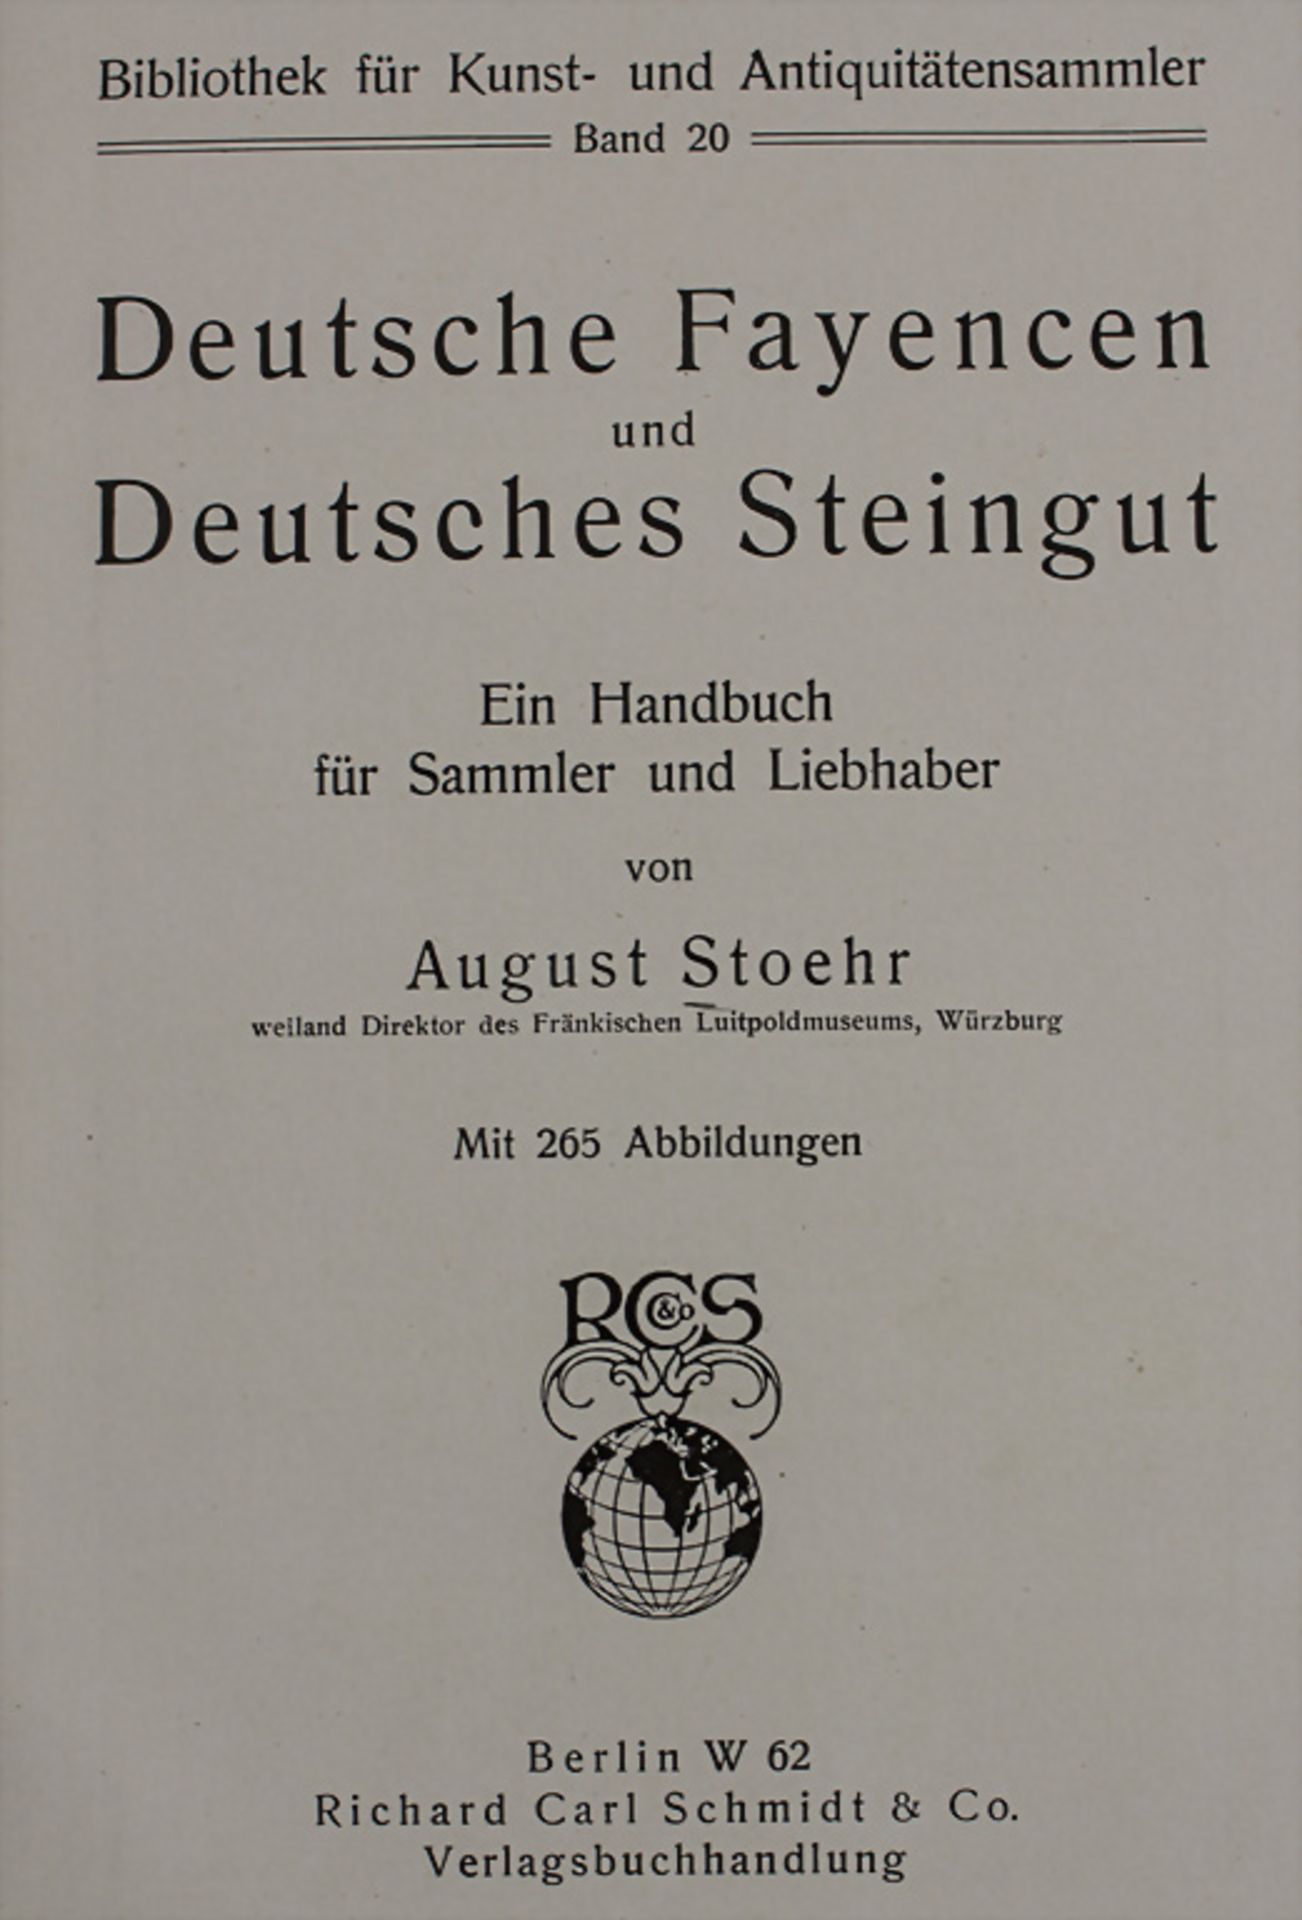 August Stöhr: 'Deutsche Fayencen und Deutsches Steingut', Berlin 1920